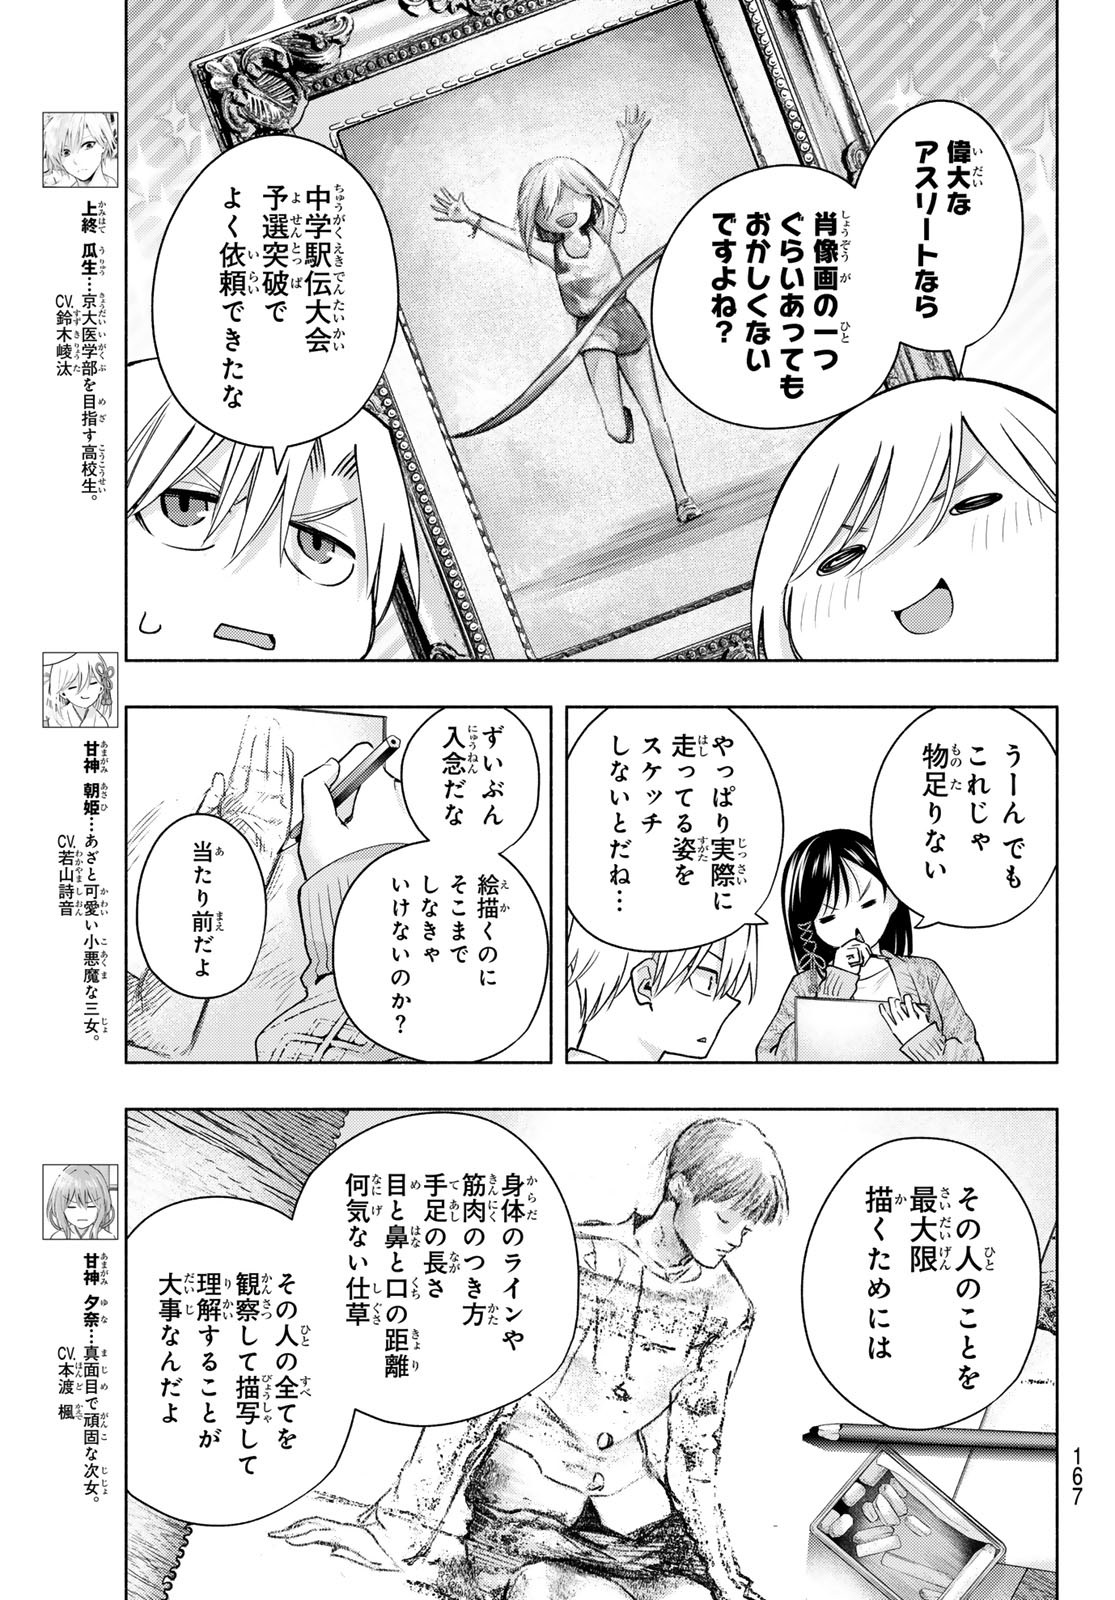 Amagami-san Chi no Enmusubi - Chapter 131 - Page 3